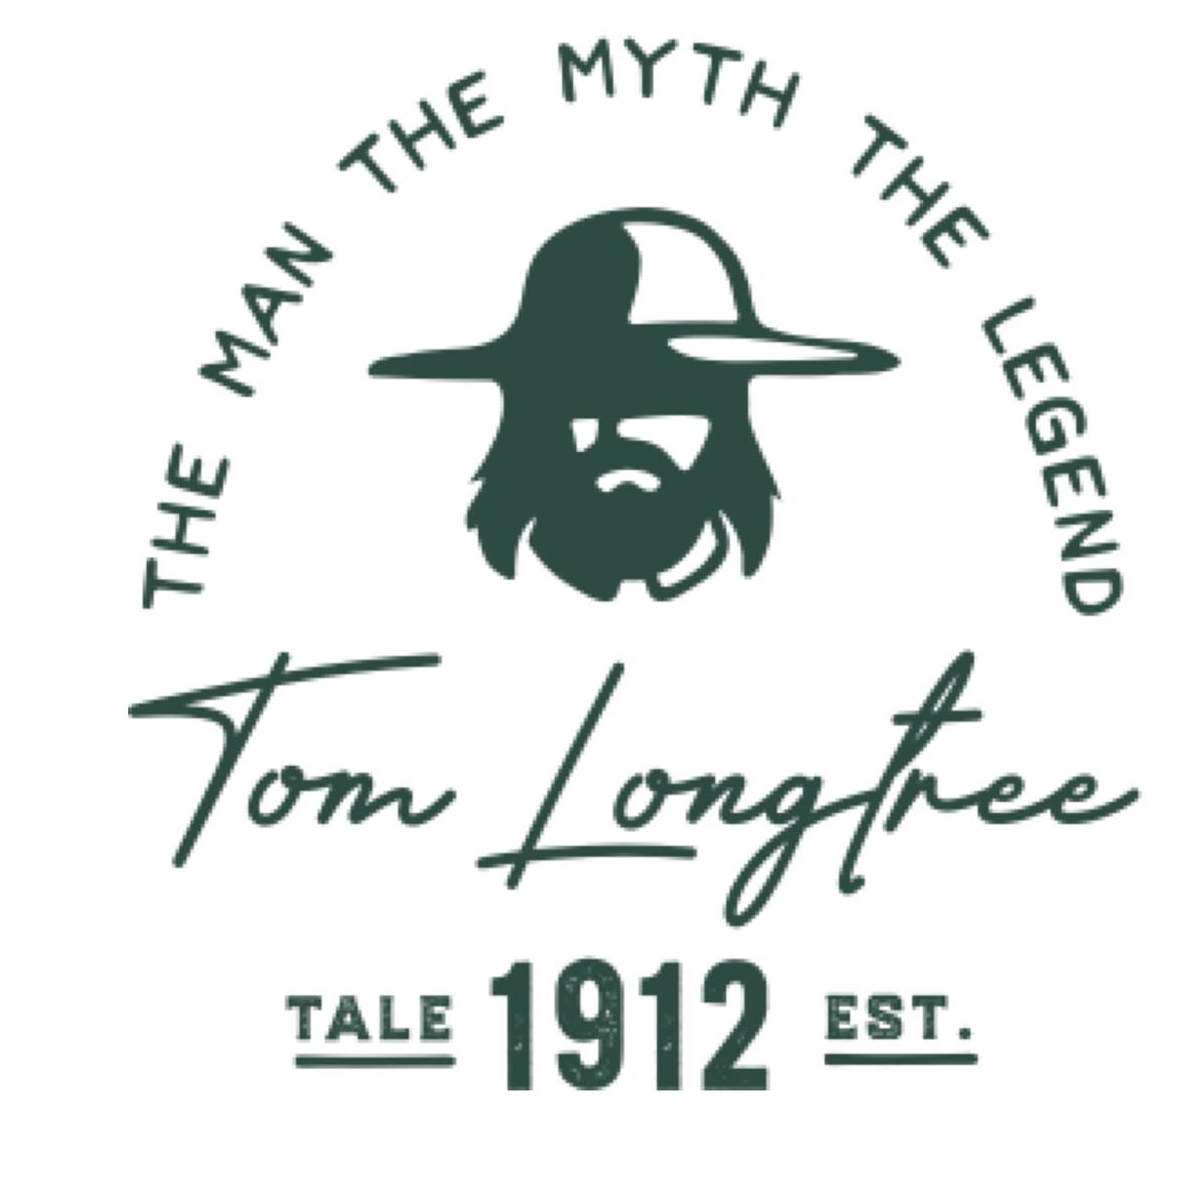 longtrees logo